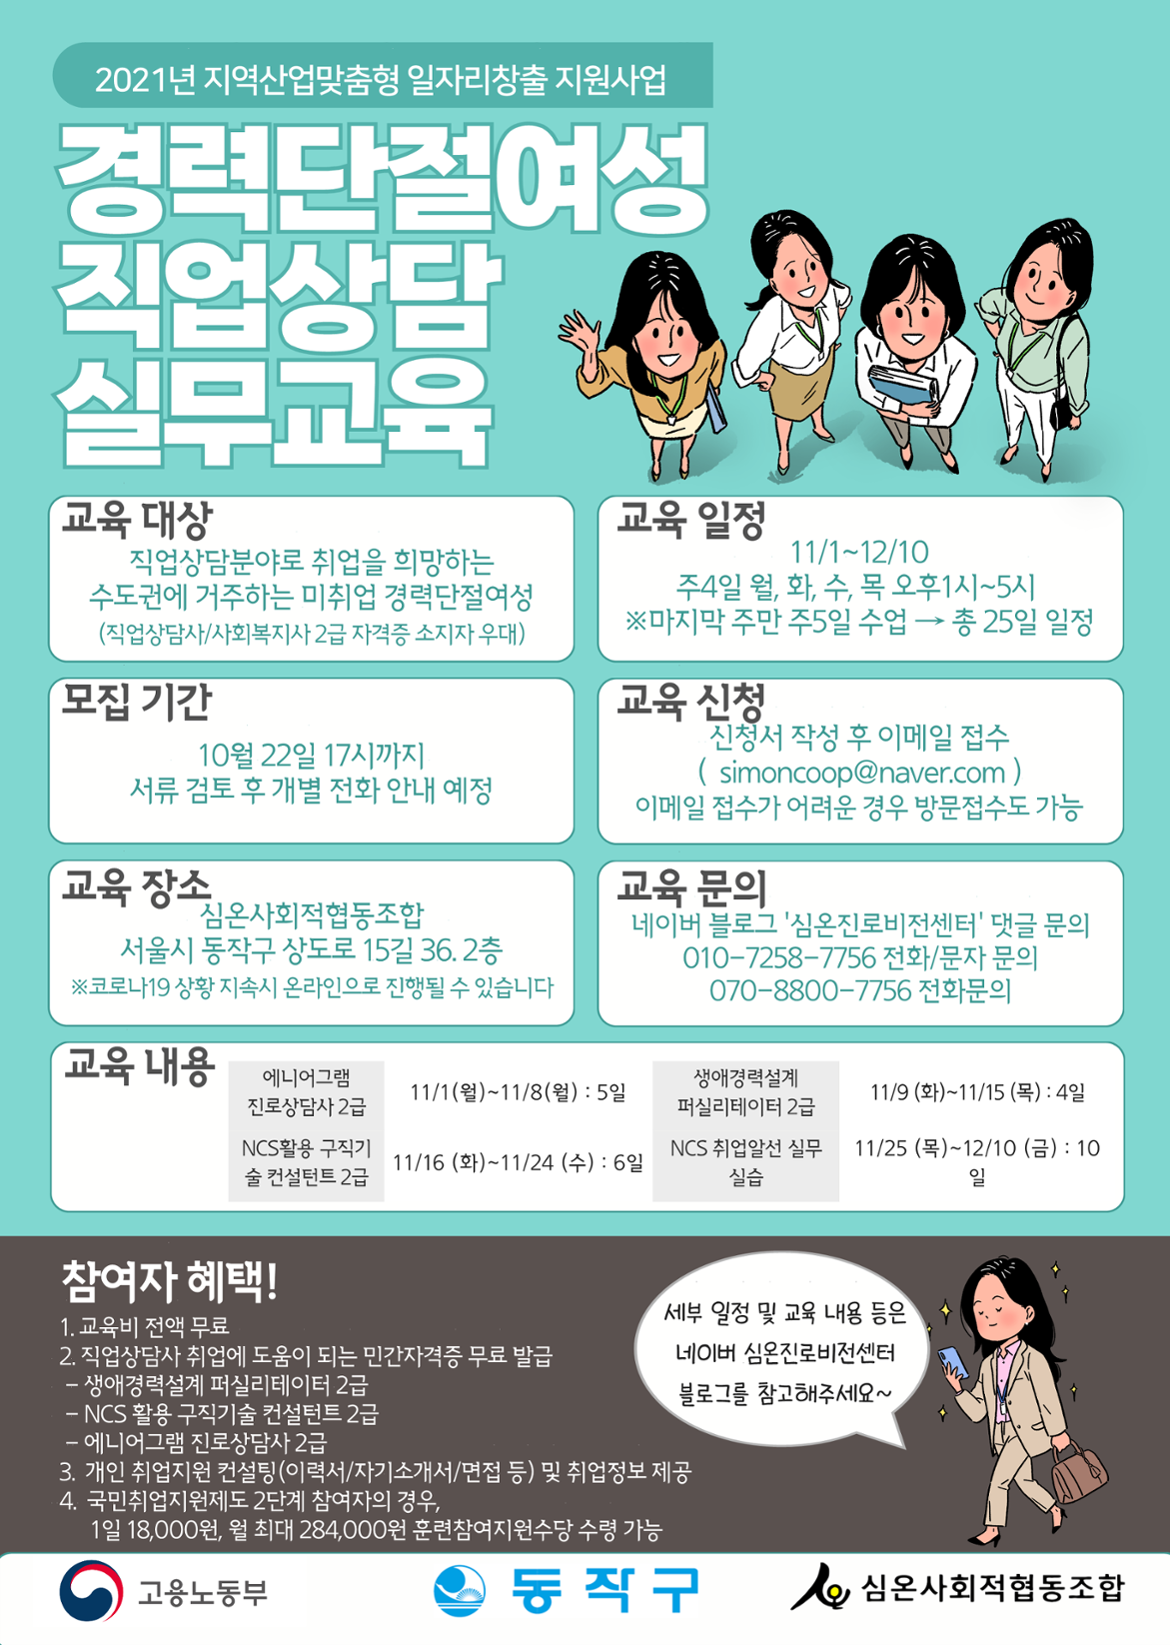 지산맞3기교육생모집홍보웹진_1.png